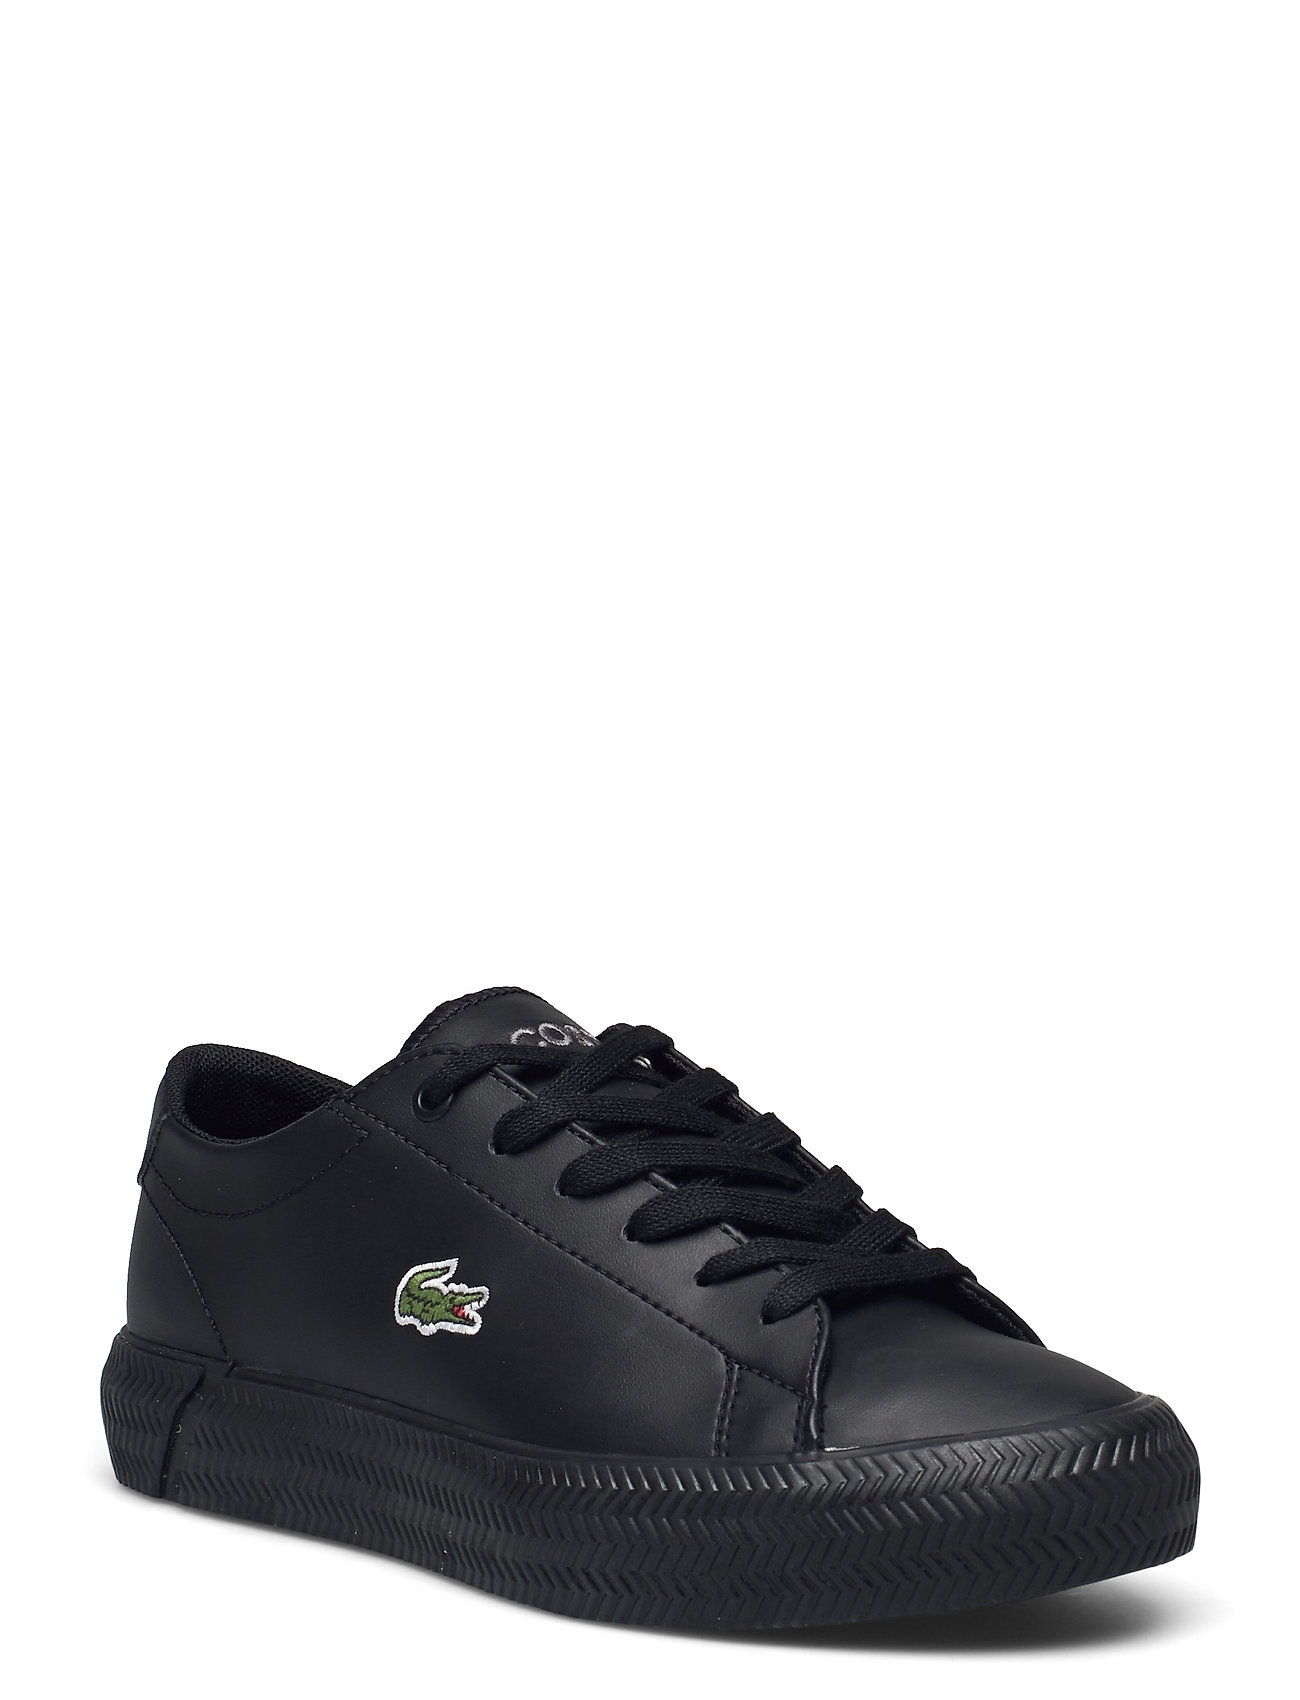 Lacoste Shoes Gripshot Bl 21 1 Cuj (Blk/blk Synthetic), 404.55 kr 